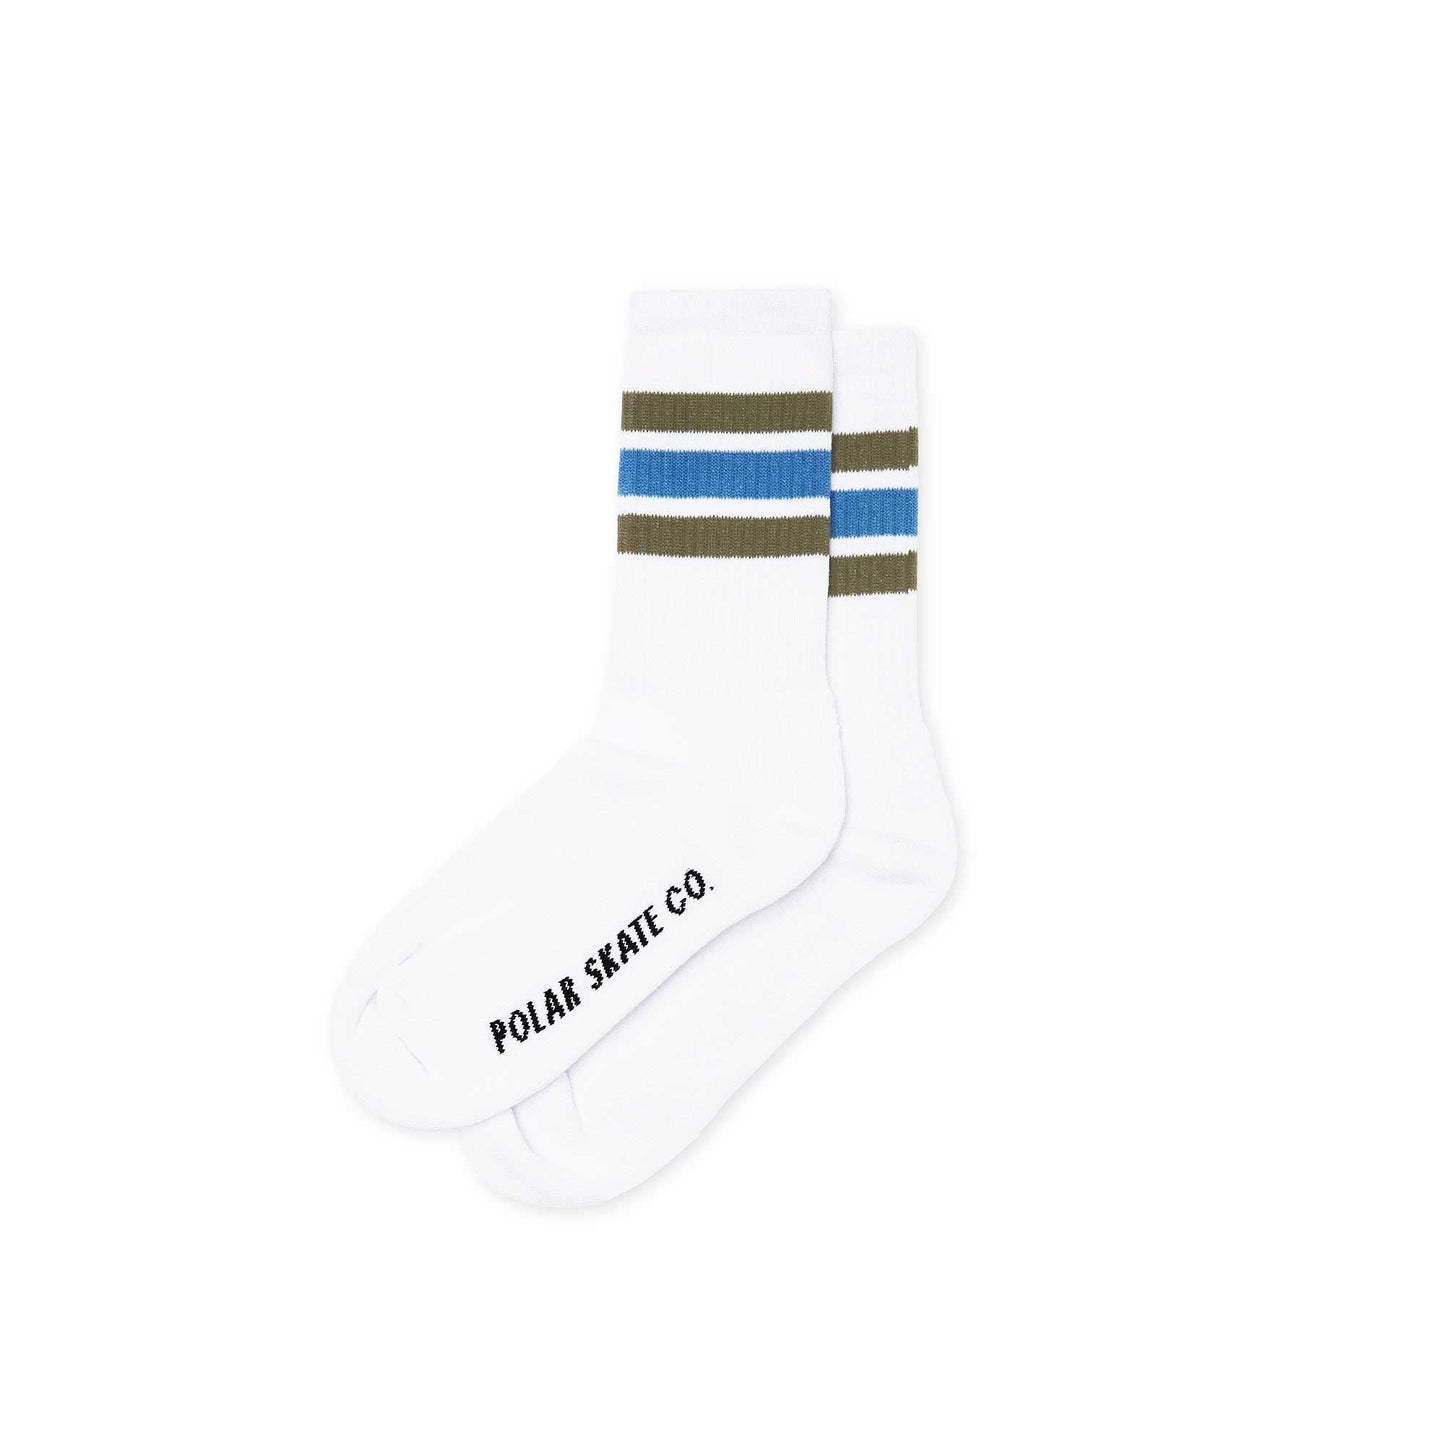 Polar Stripe socks, white/army/blue, white/army/blue - Tiki Room Skateboards - 1